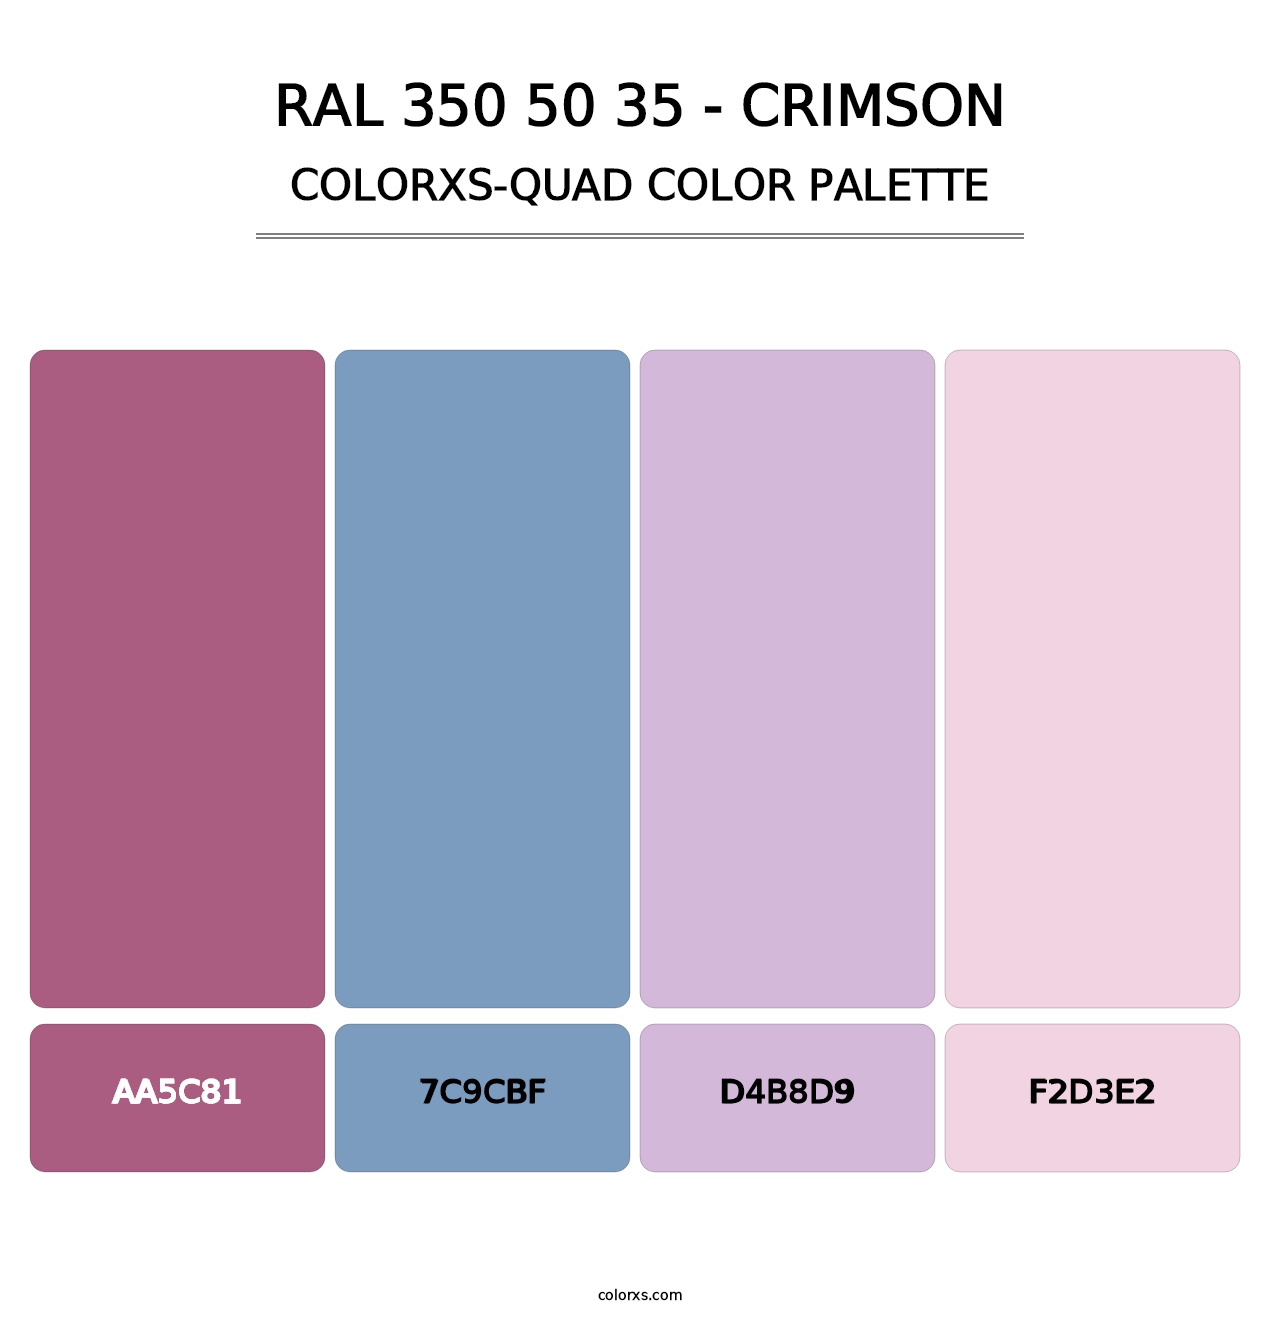 RAL 350 50 35 - Crimson - Colorxs Quad Palette